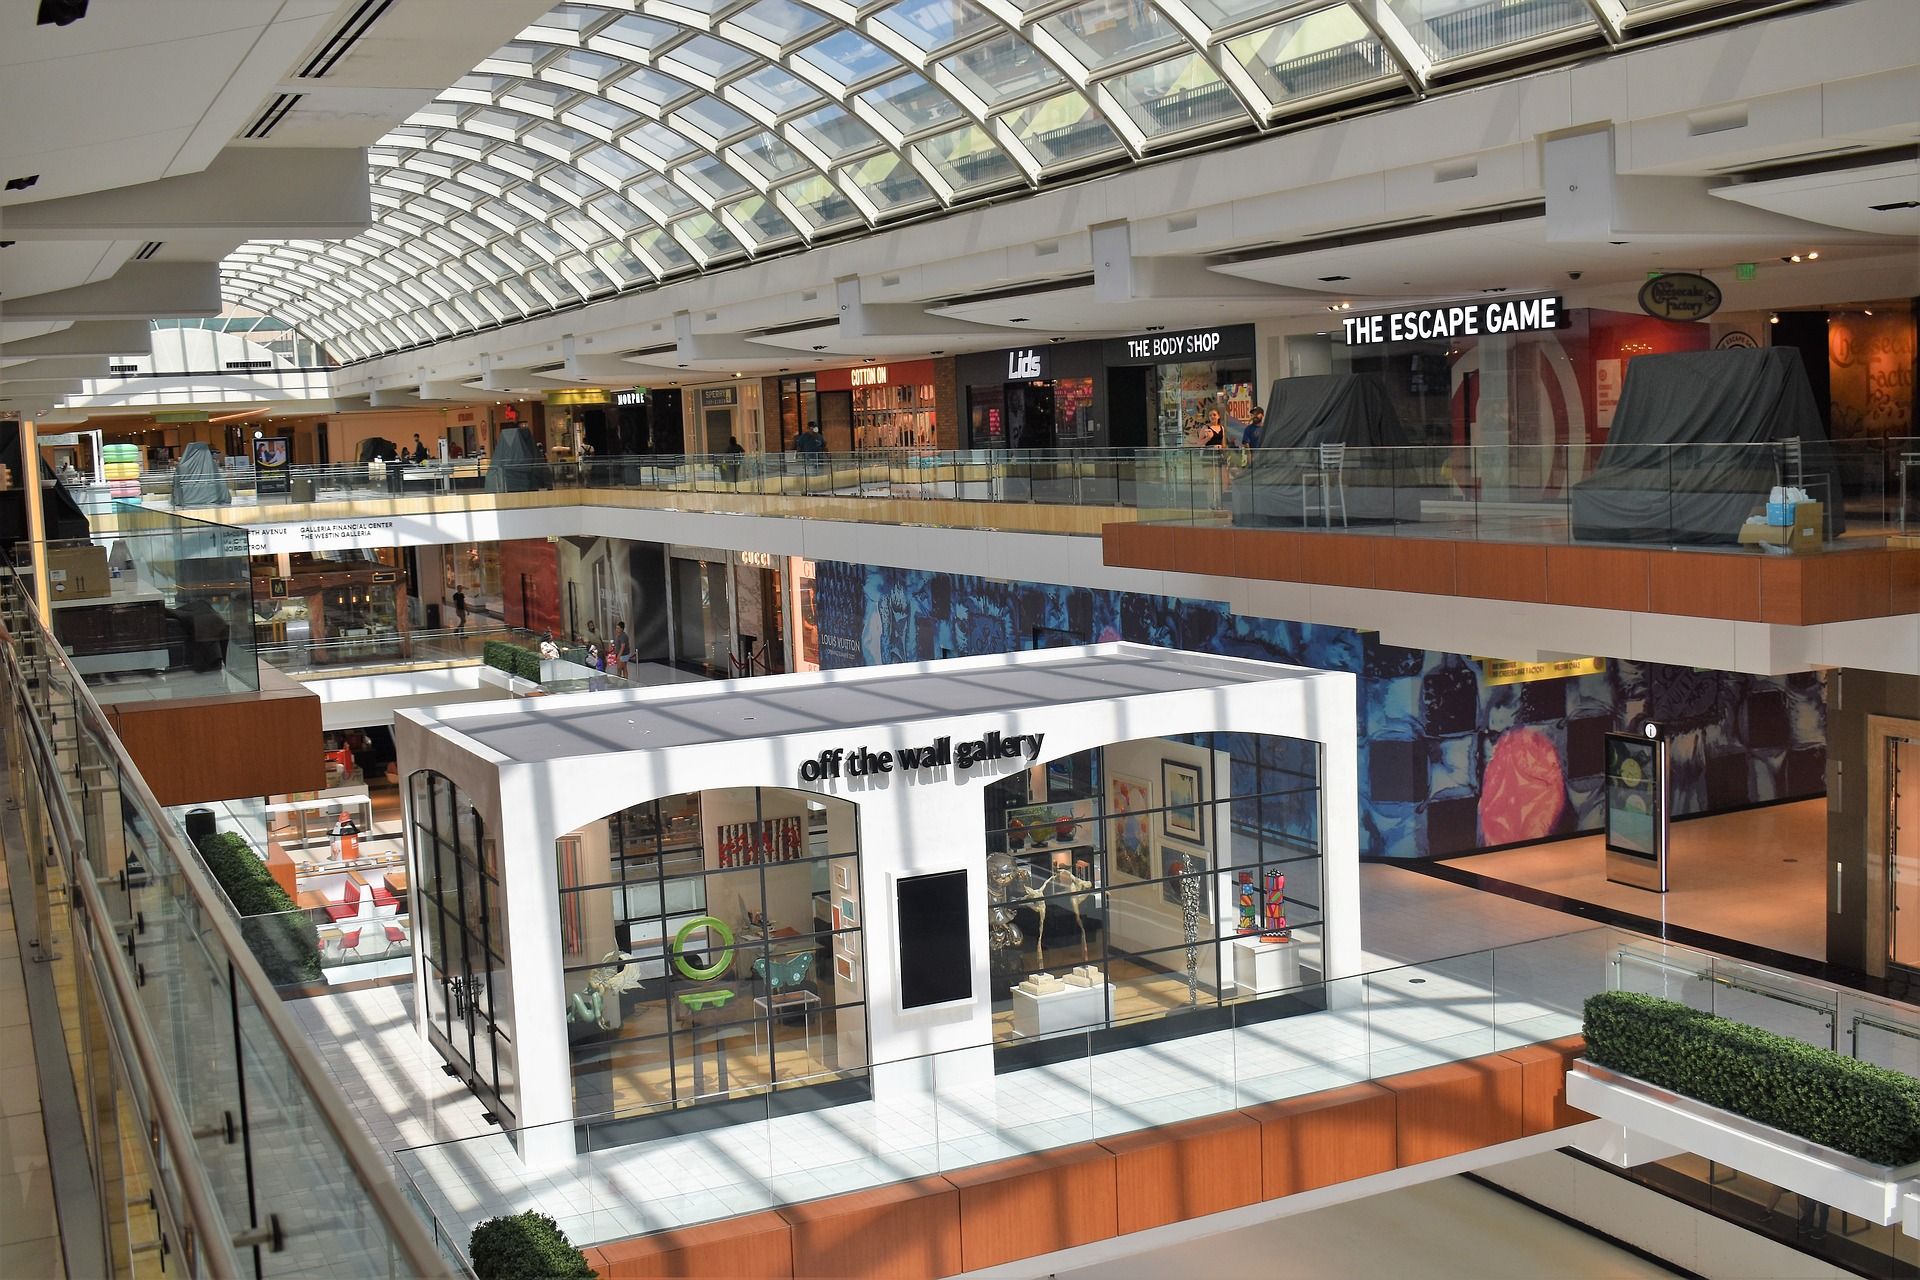 Interior of the Galleria Mall in Houston